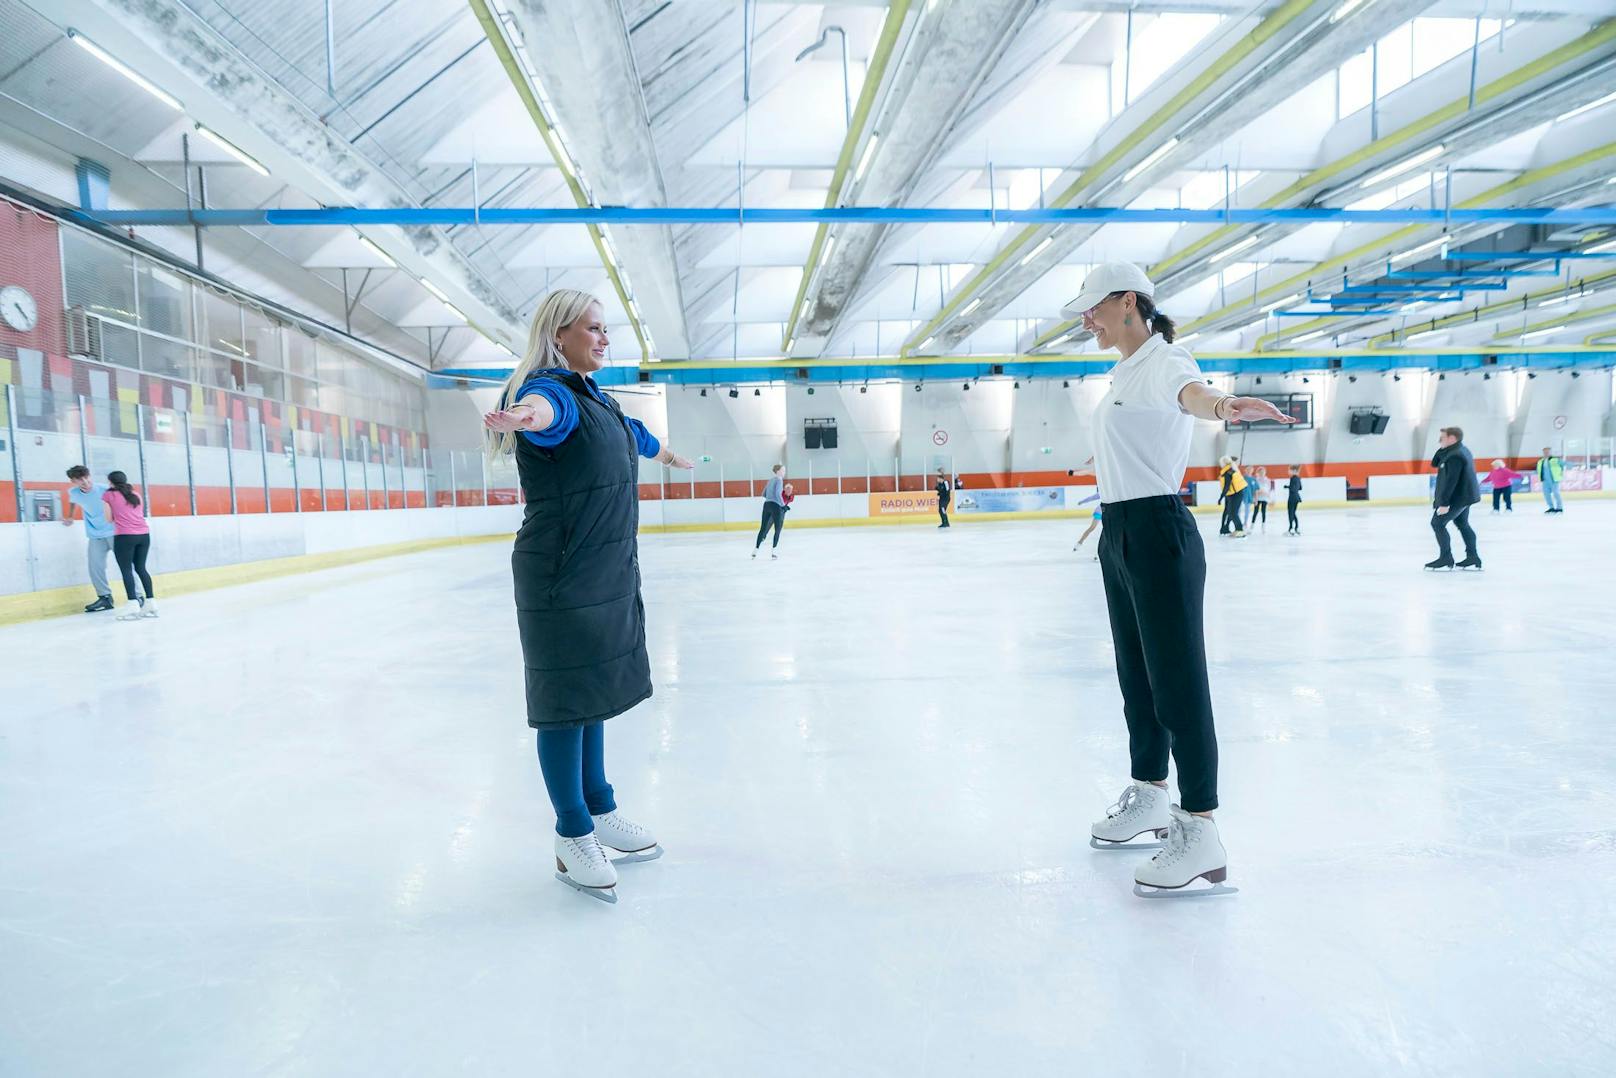 Trainerin Rafaela (links) trainiert hauptberuflich Menschen auf dem Eis. Ihr Tipp für Anfänger: Zwei, dreimal die Füße heben, wie beim Laufen, und dann gleiten"